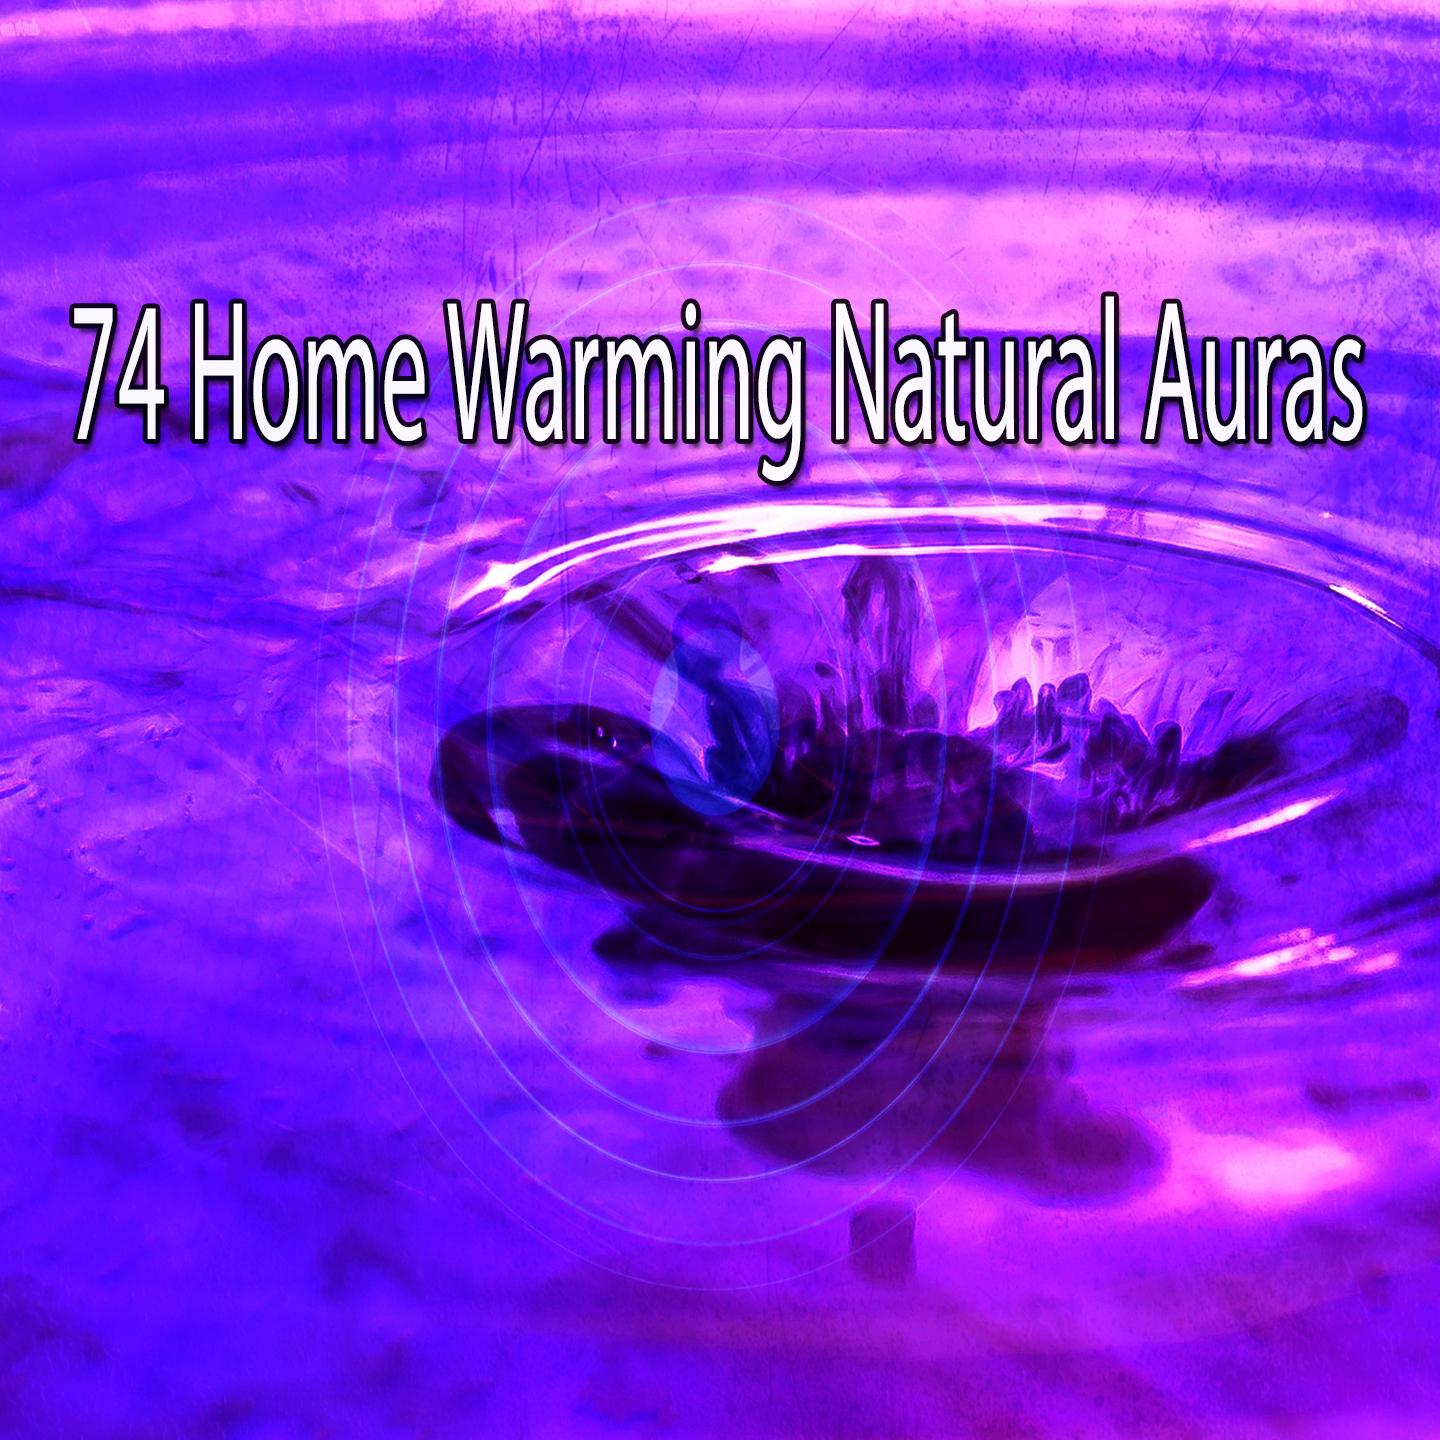 74 Home Warming Natural Auras